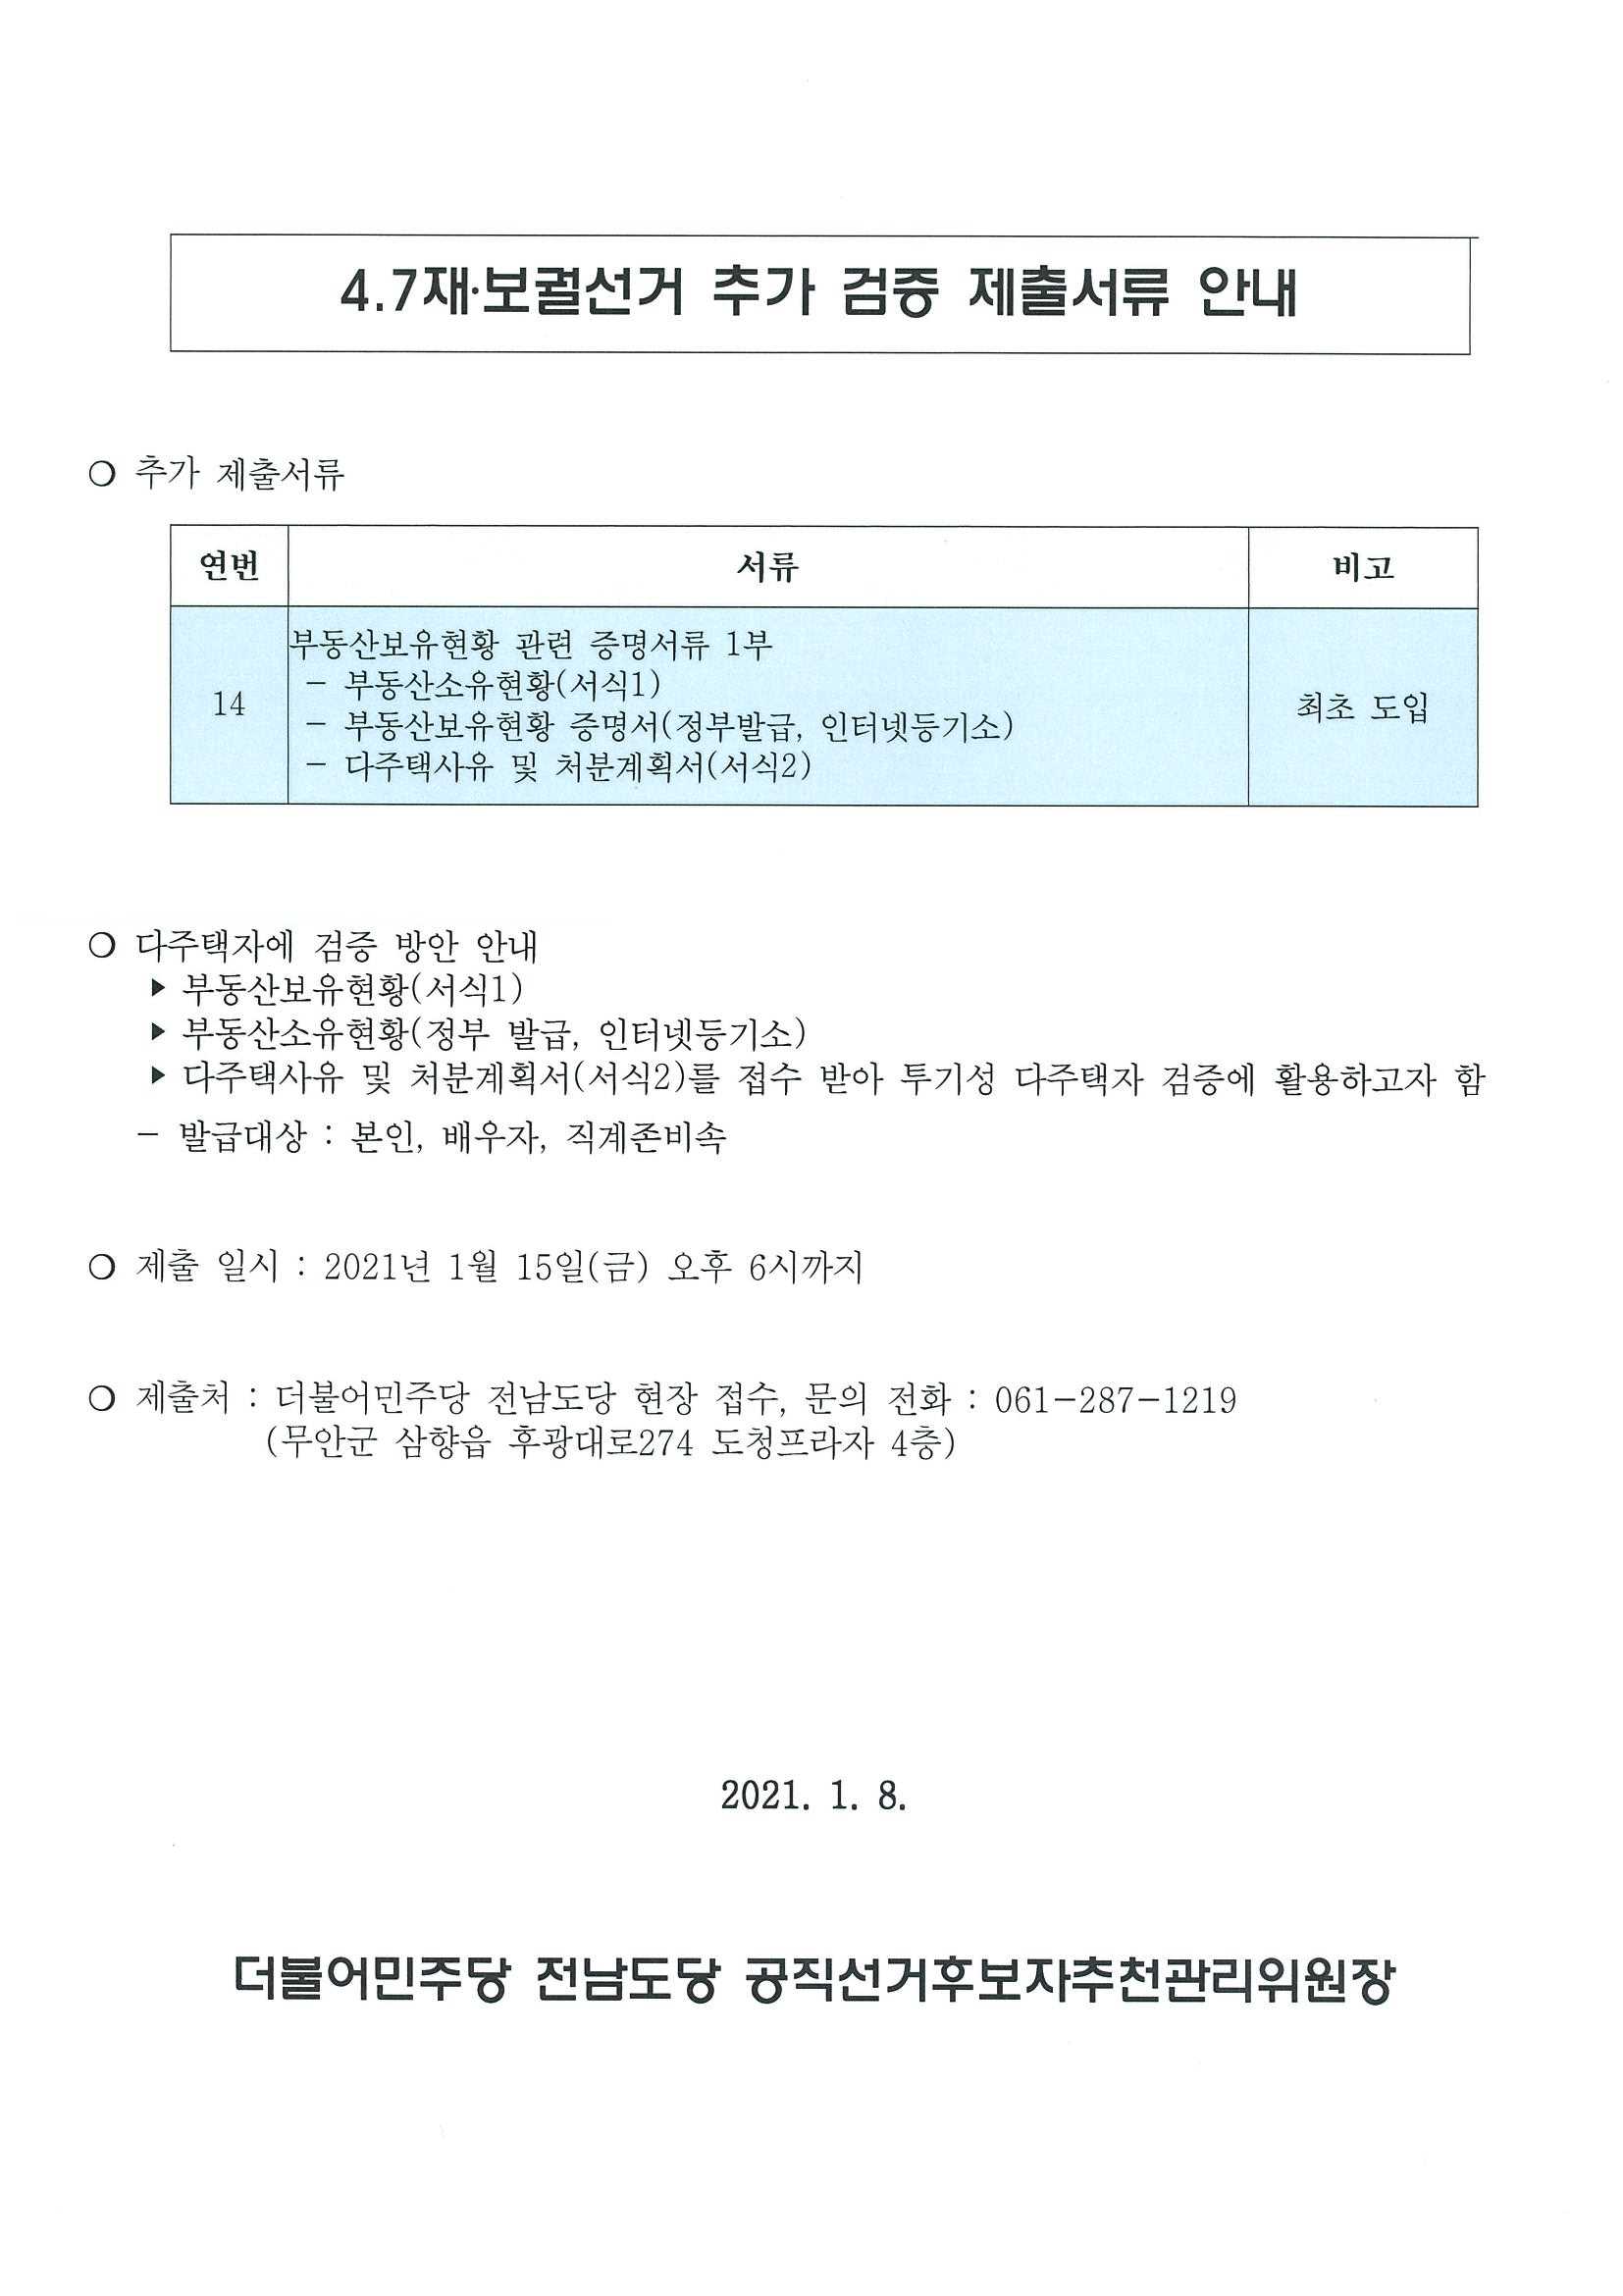 210108_검증위원회 추가 제출서류(서식).jpg